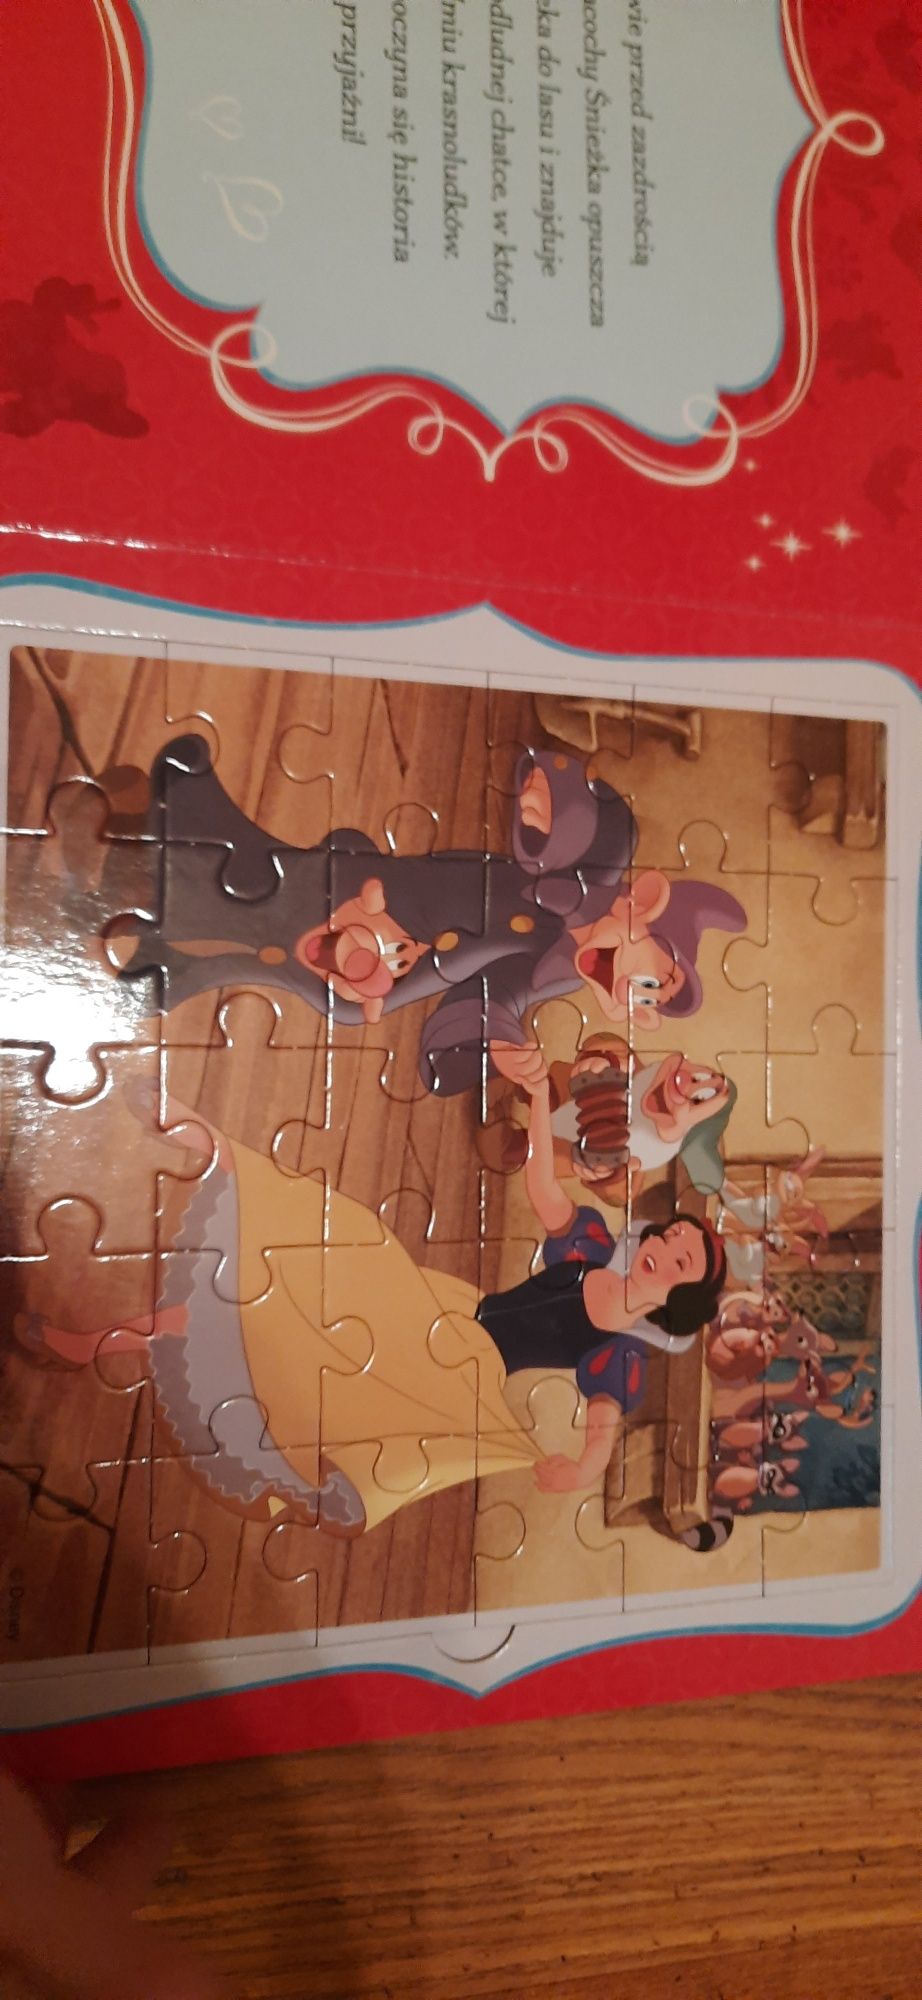 Książki puzzle kubuś puchatek księżniczki